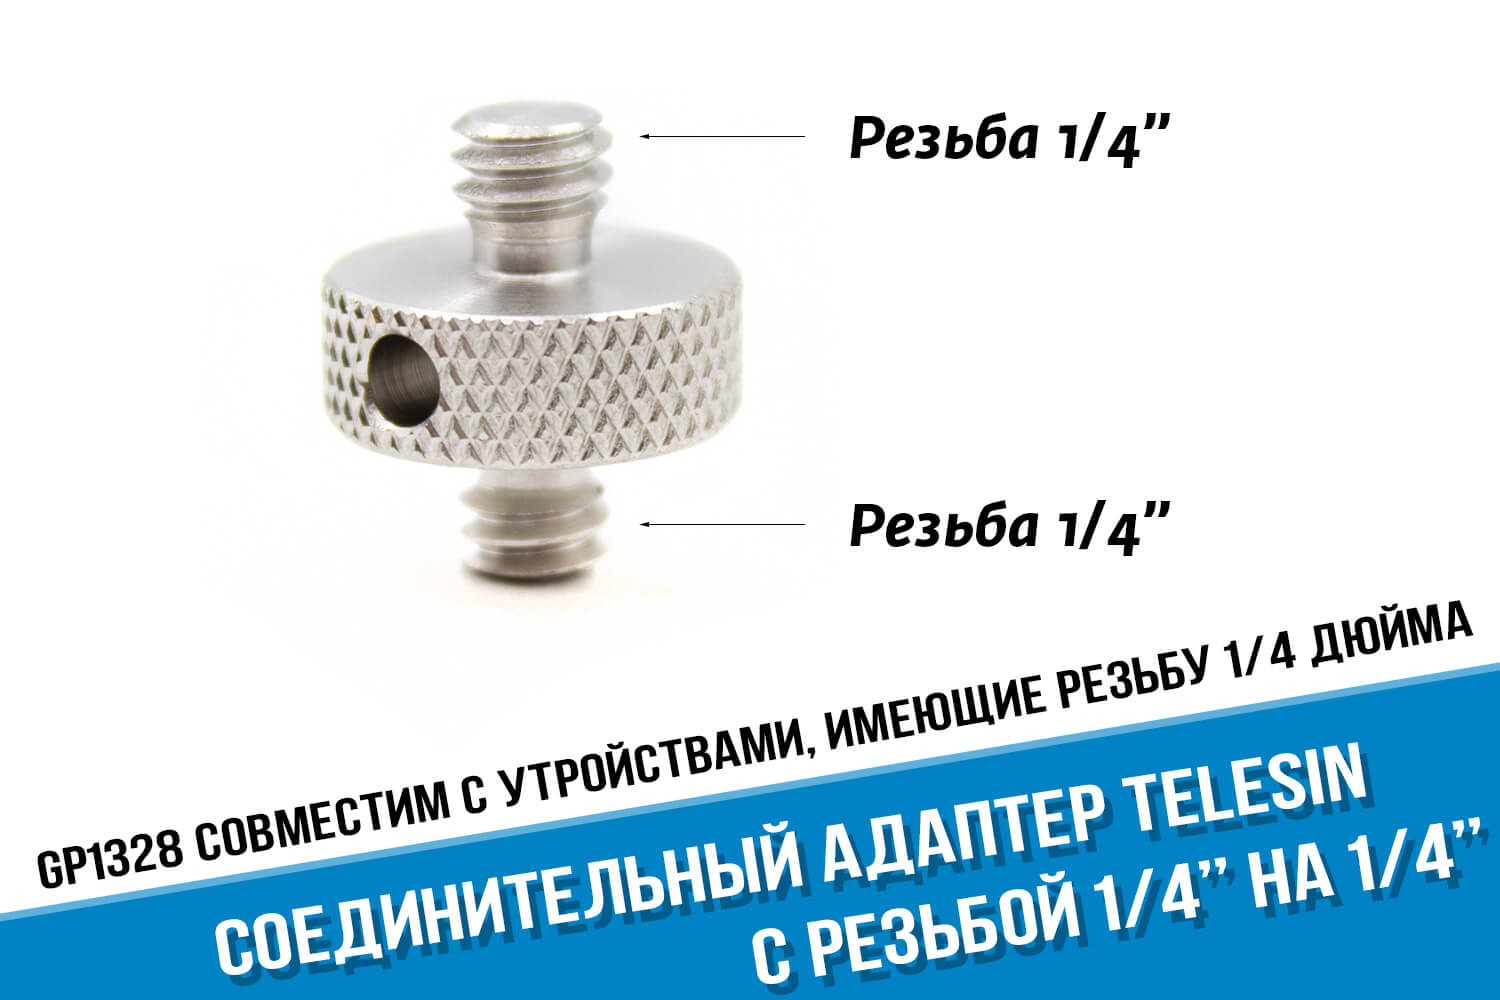 Соединительный адаптер с резьбой 1/4 дюйма на 1/4 дюйма фирмы Telesin